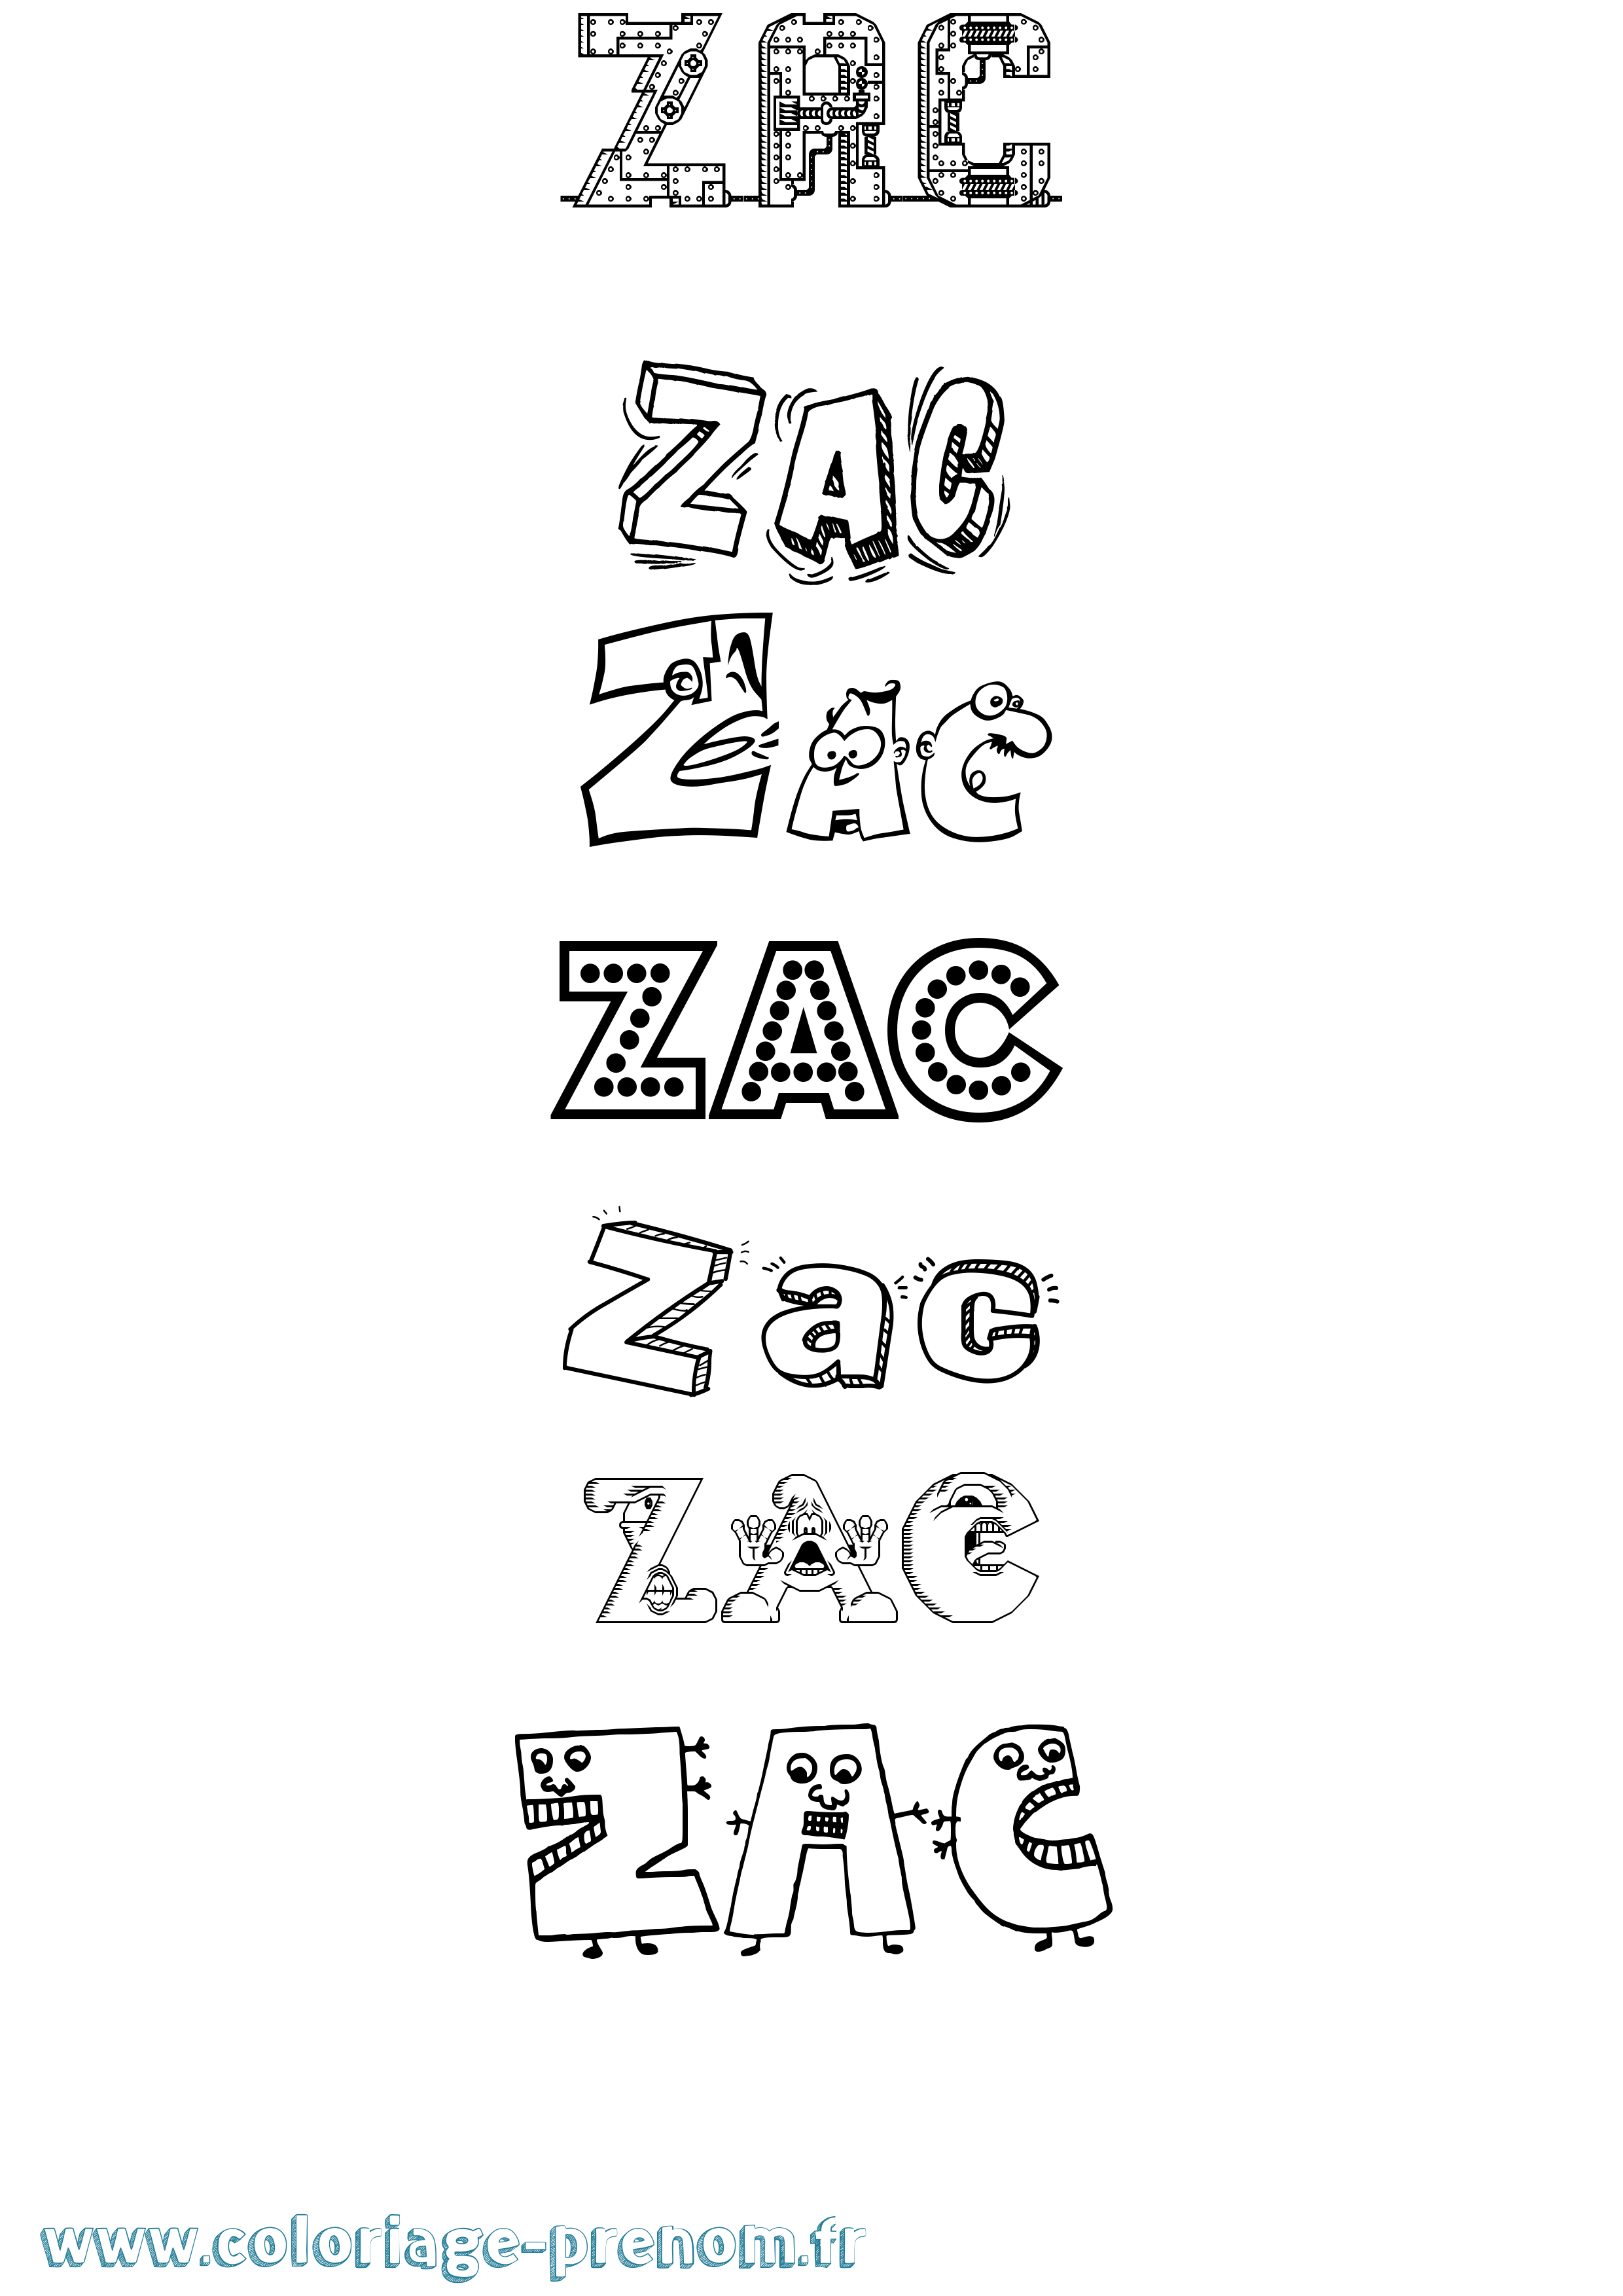 Coloriage prénom Zac Fun